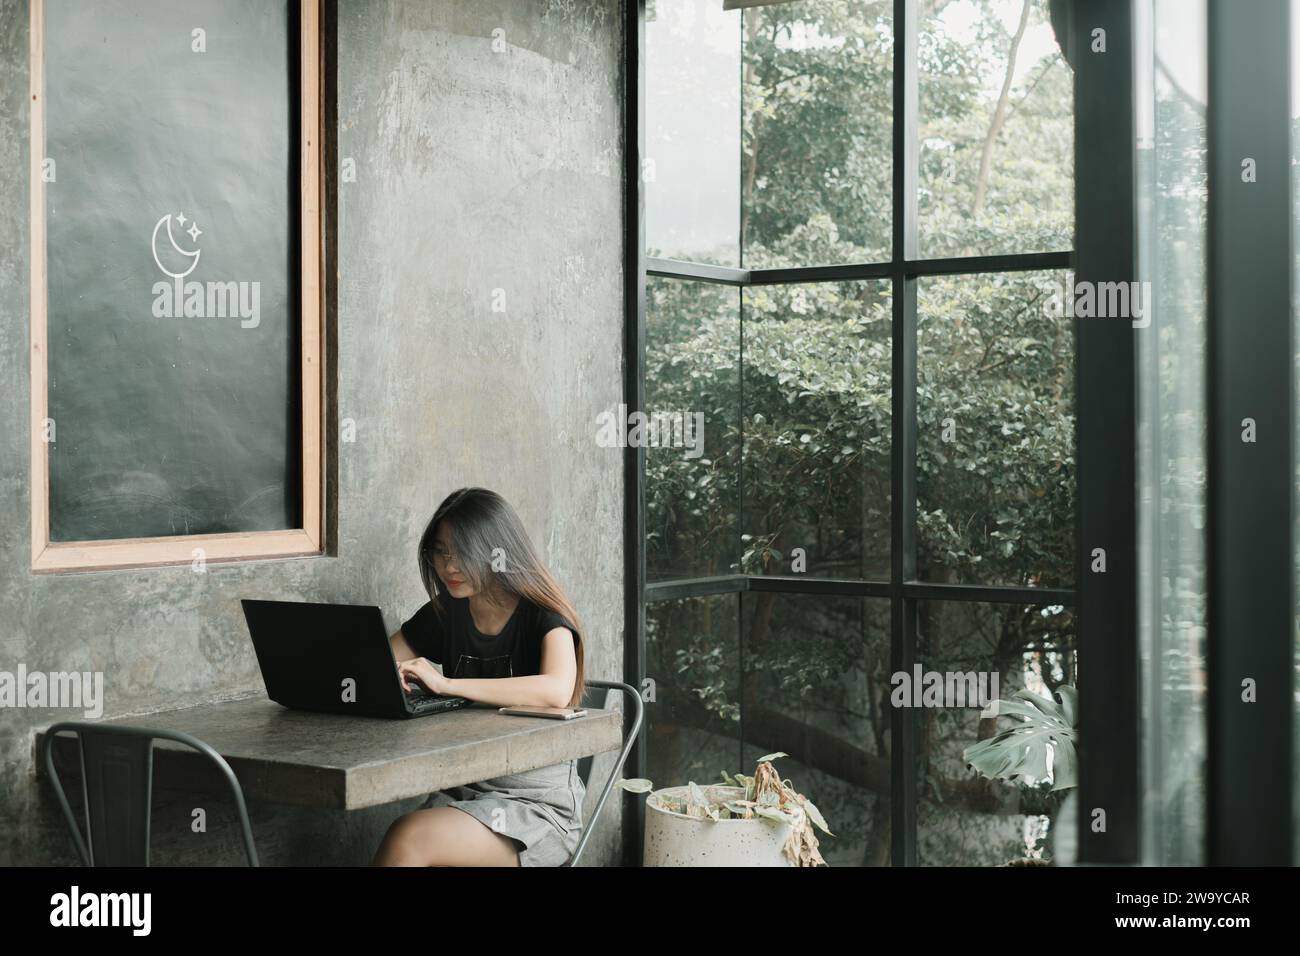 Jeune femme asiatique utilisant une tenue décontractée travaille sur un ordinateur portable dans une salle industrielle ou un café Banque D'Images